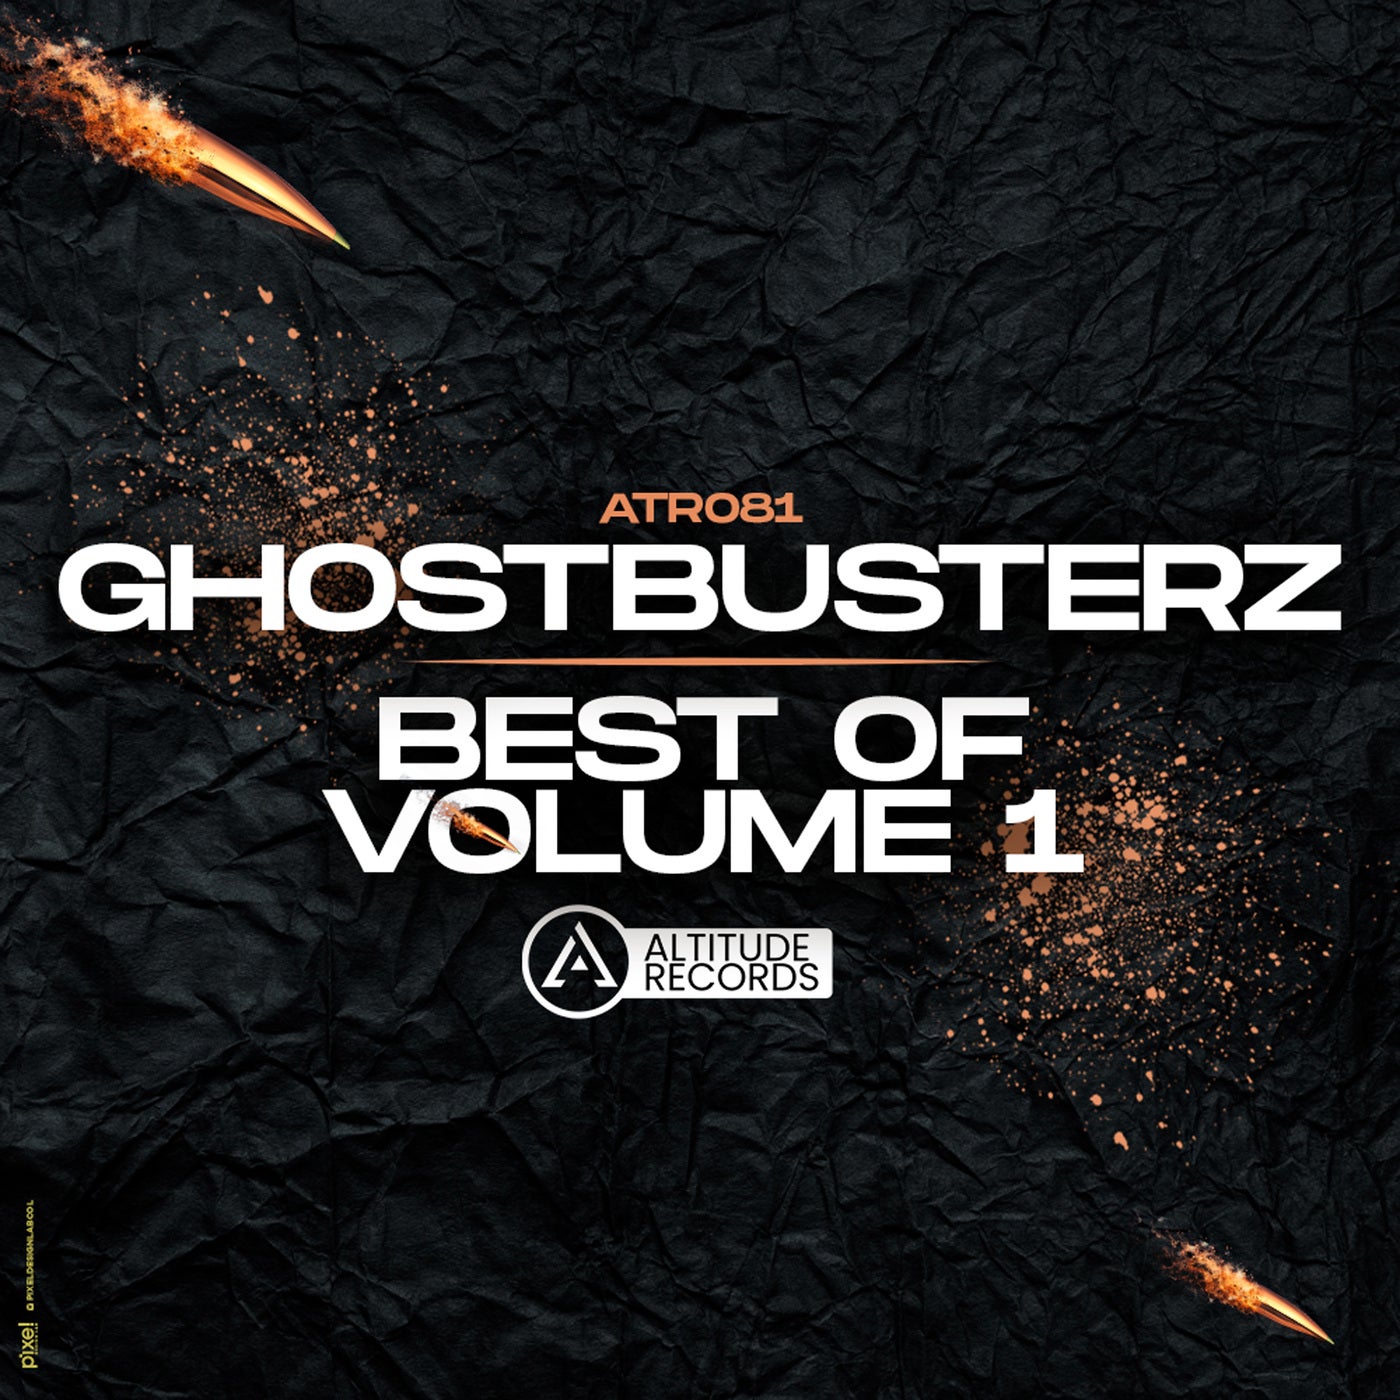 Ghostbusterz Best Of Volume 1